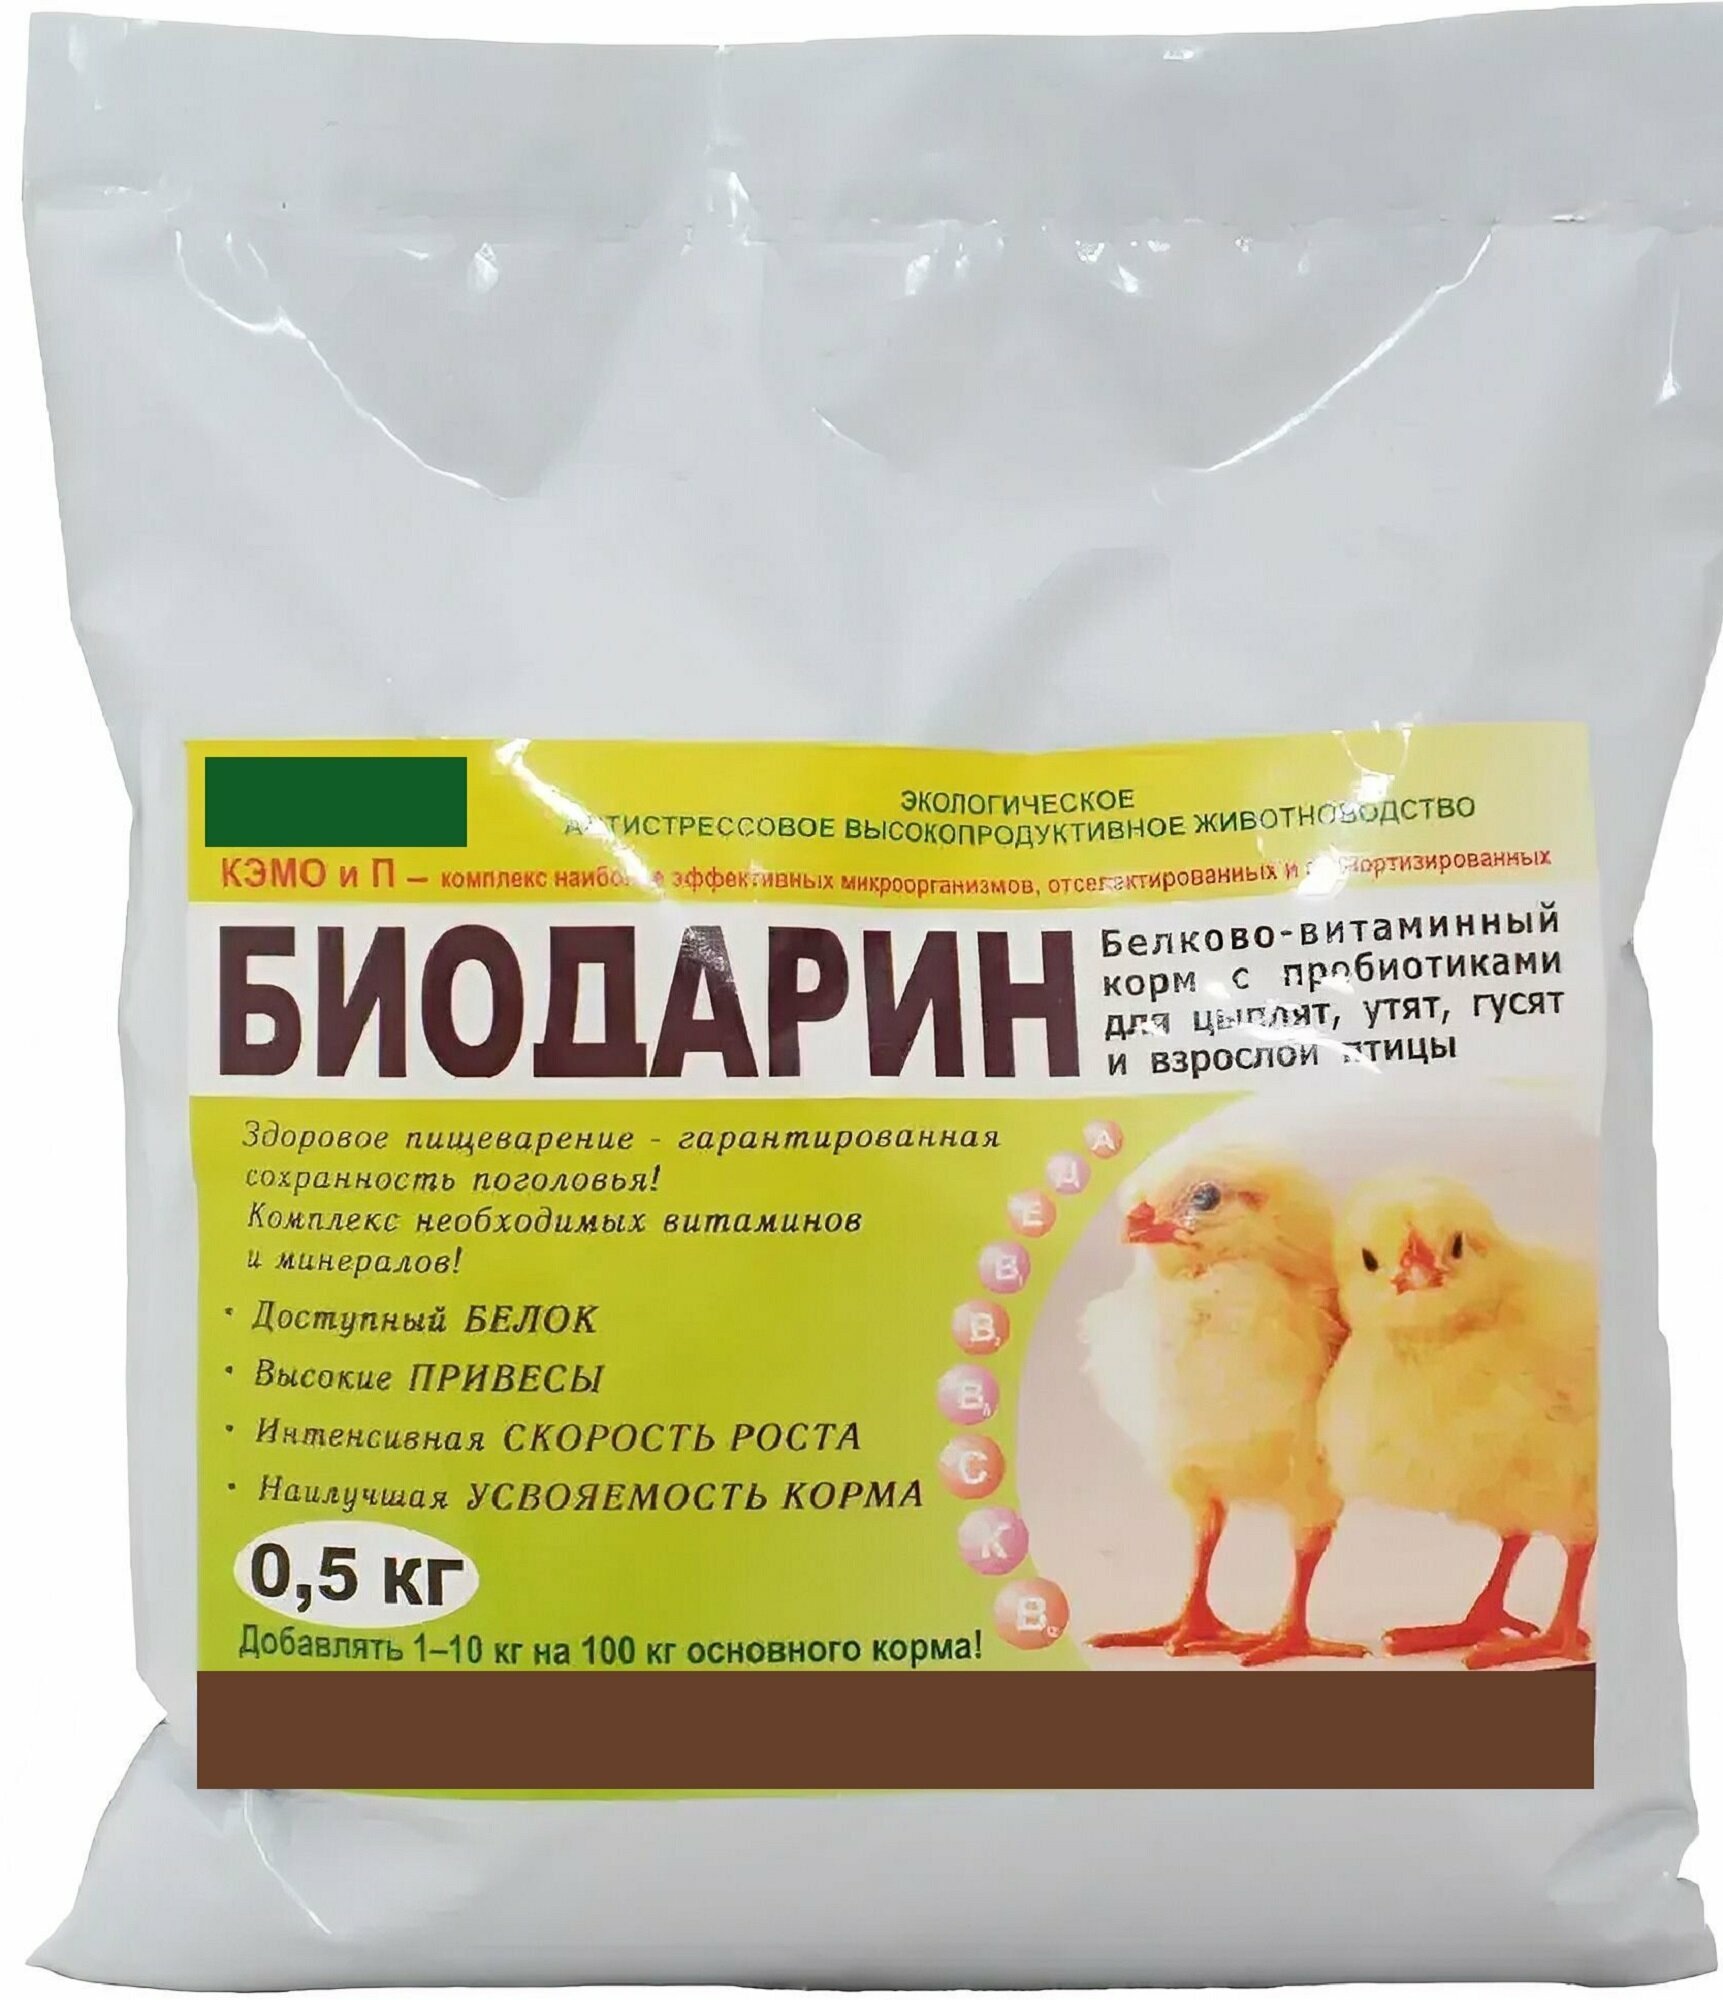 Биодарин 500 г, премикс для молодняка сельскохозяйственной птицы. Витаминно-минеральная пробиотическая смесь для утят, цыплят, гусят, индюшат. Увеличивает привесы, укрепляет иммунитет.